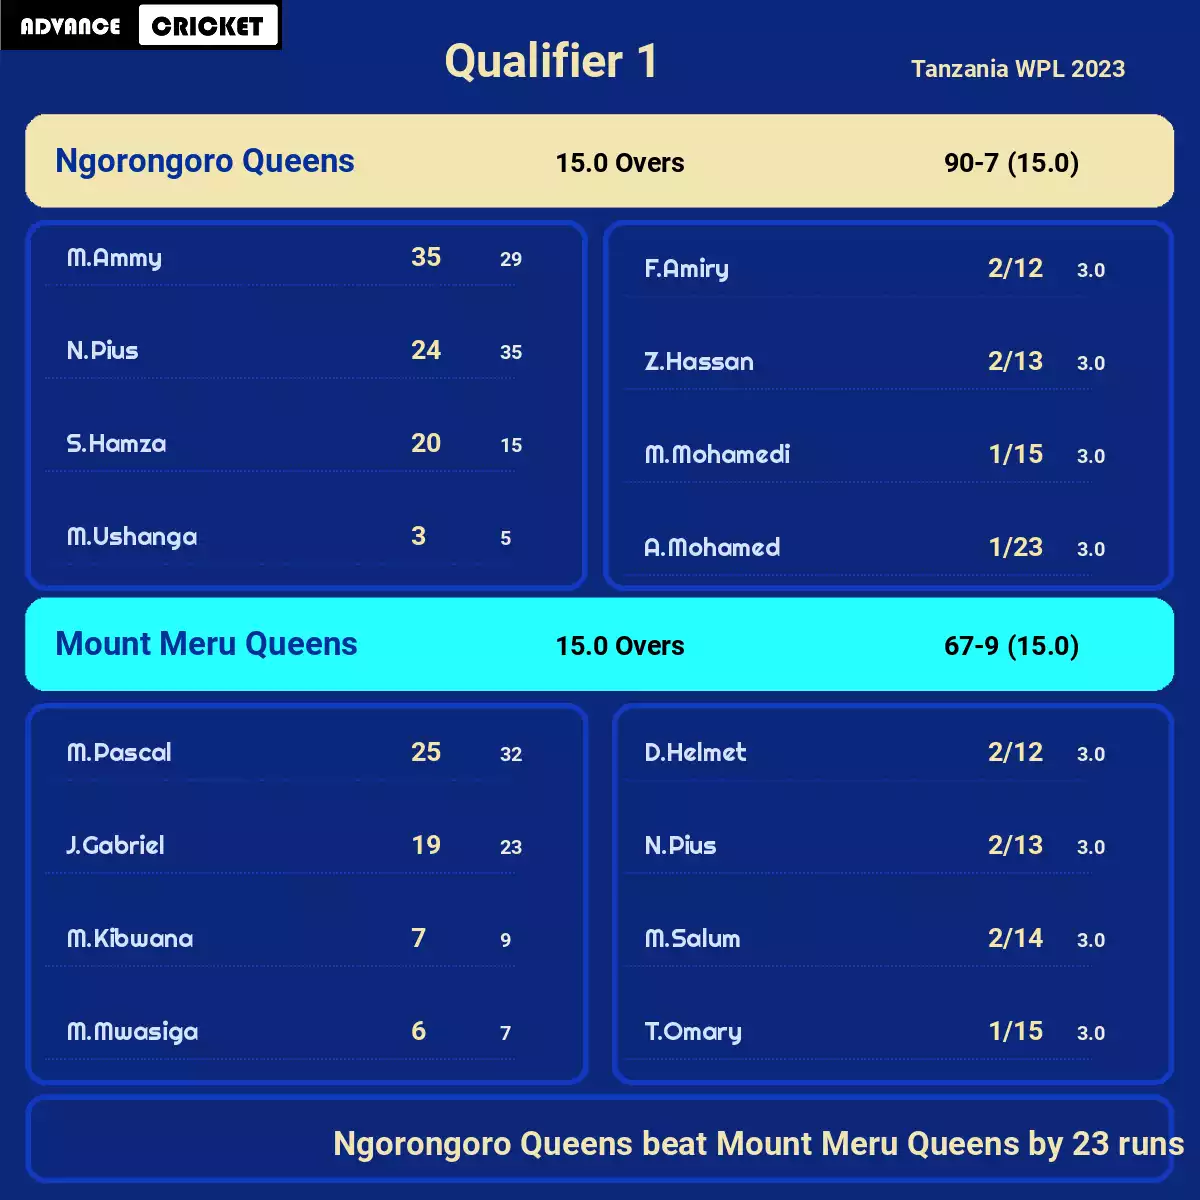 NGQ vs MMQ Qualifier 1 Tanzania WPL 2023